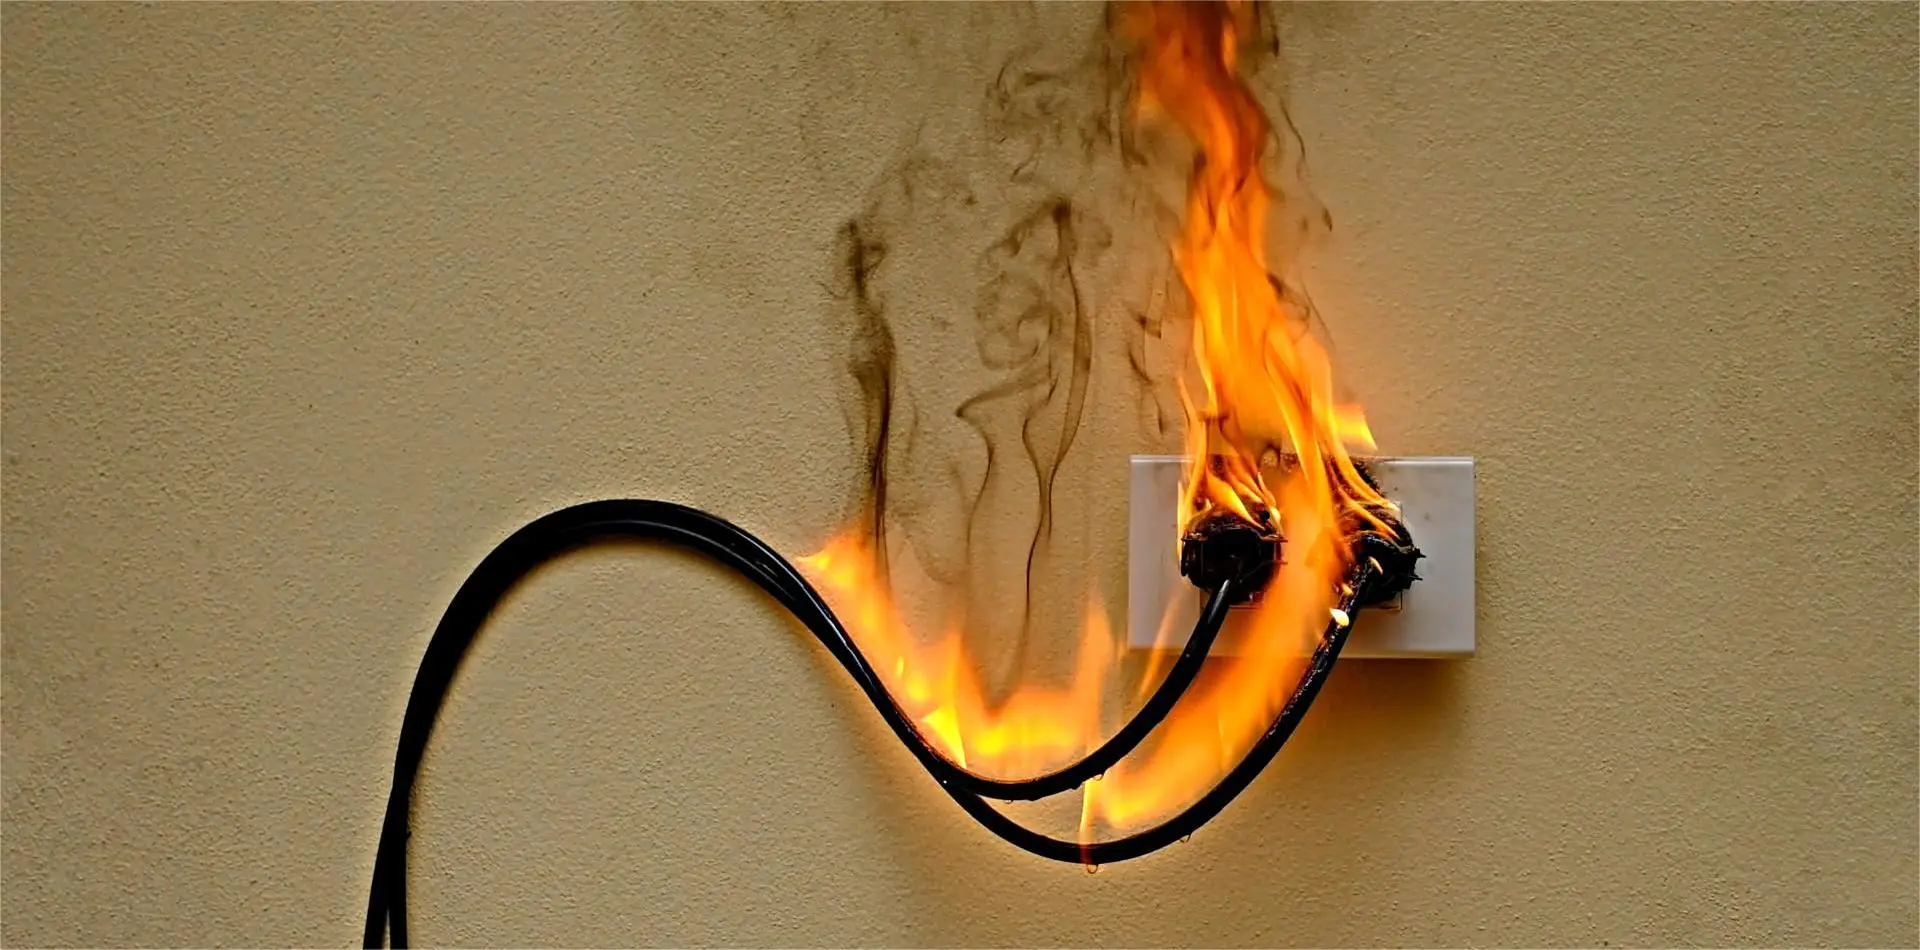 Une panne de disjoncteur déclenche un incendie électrique